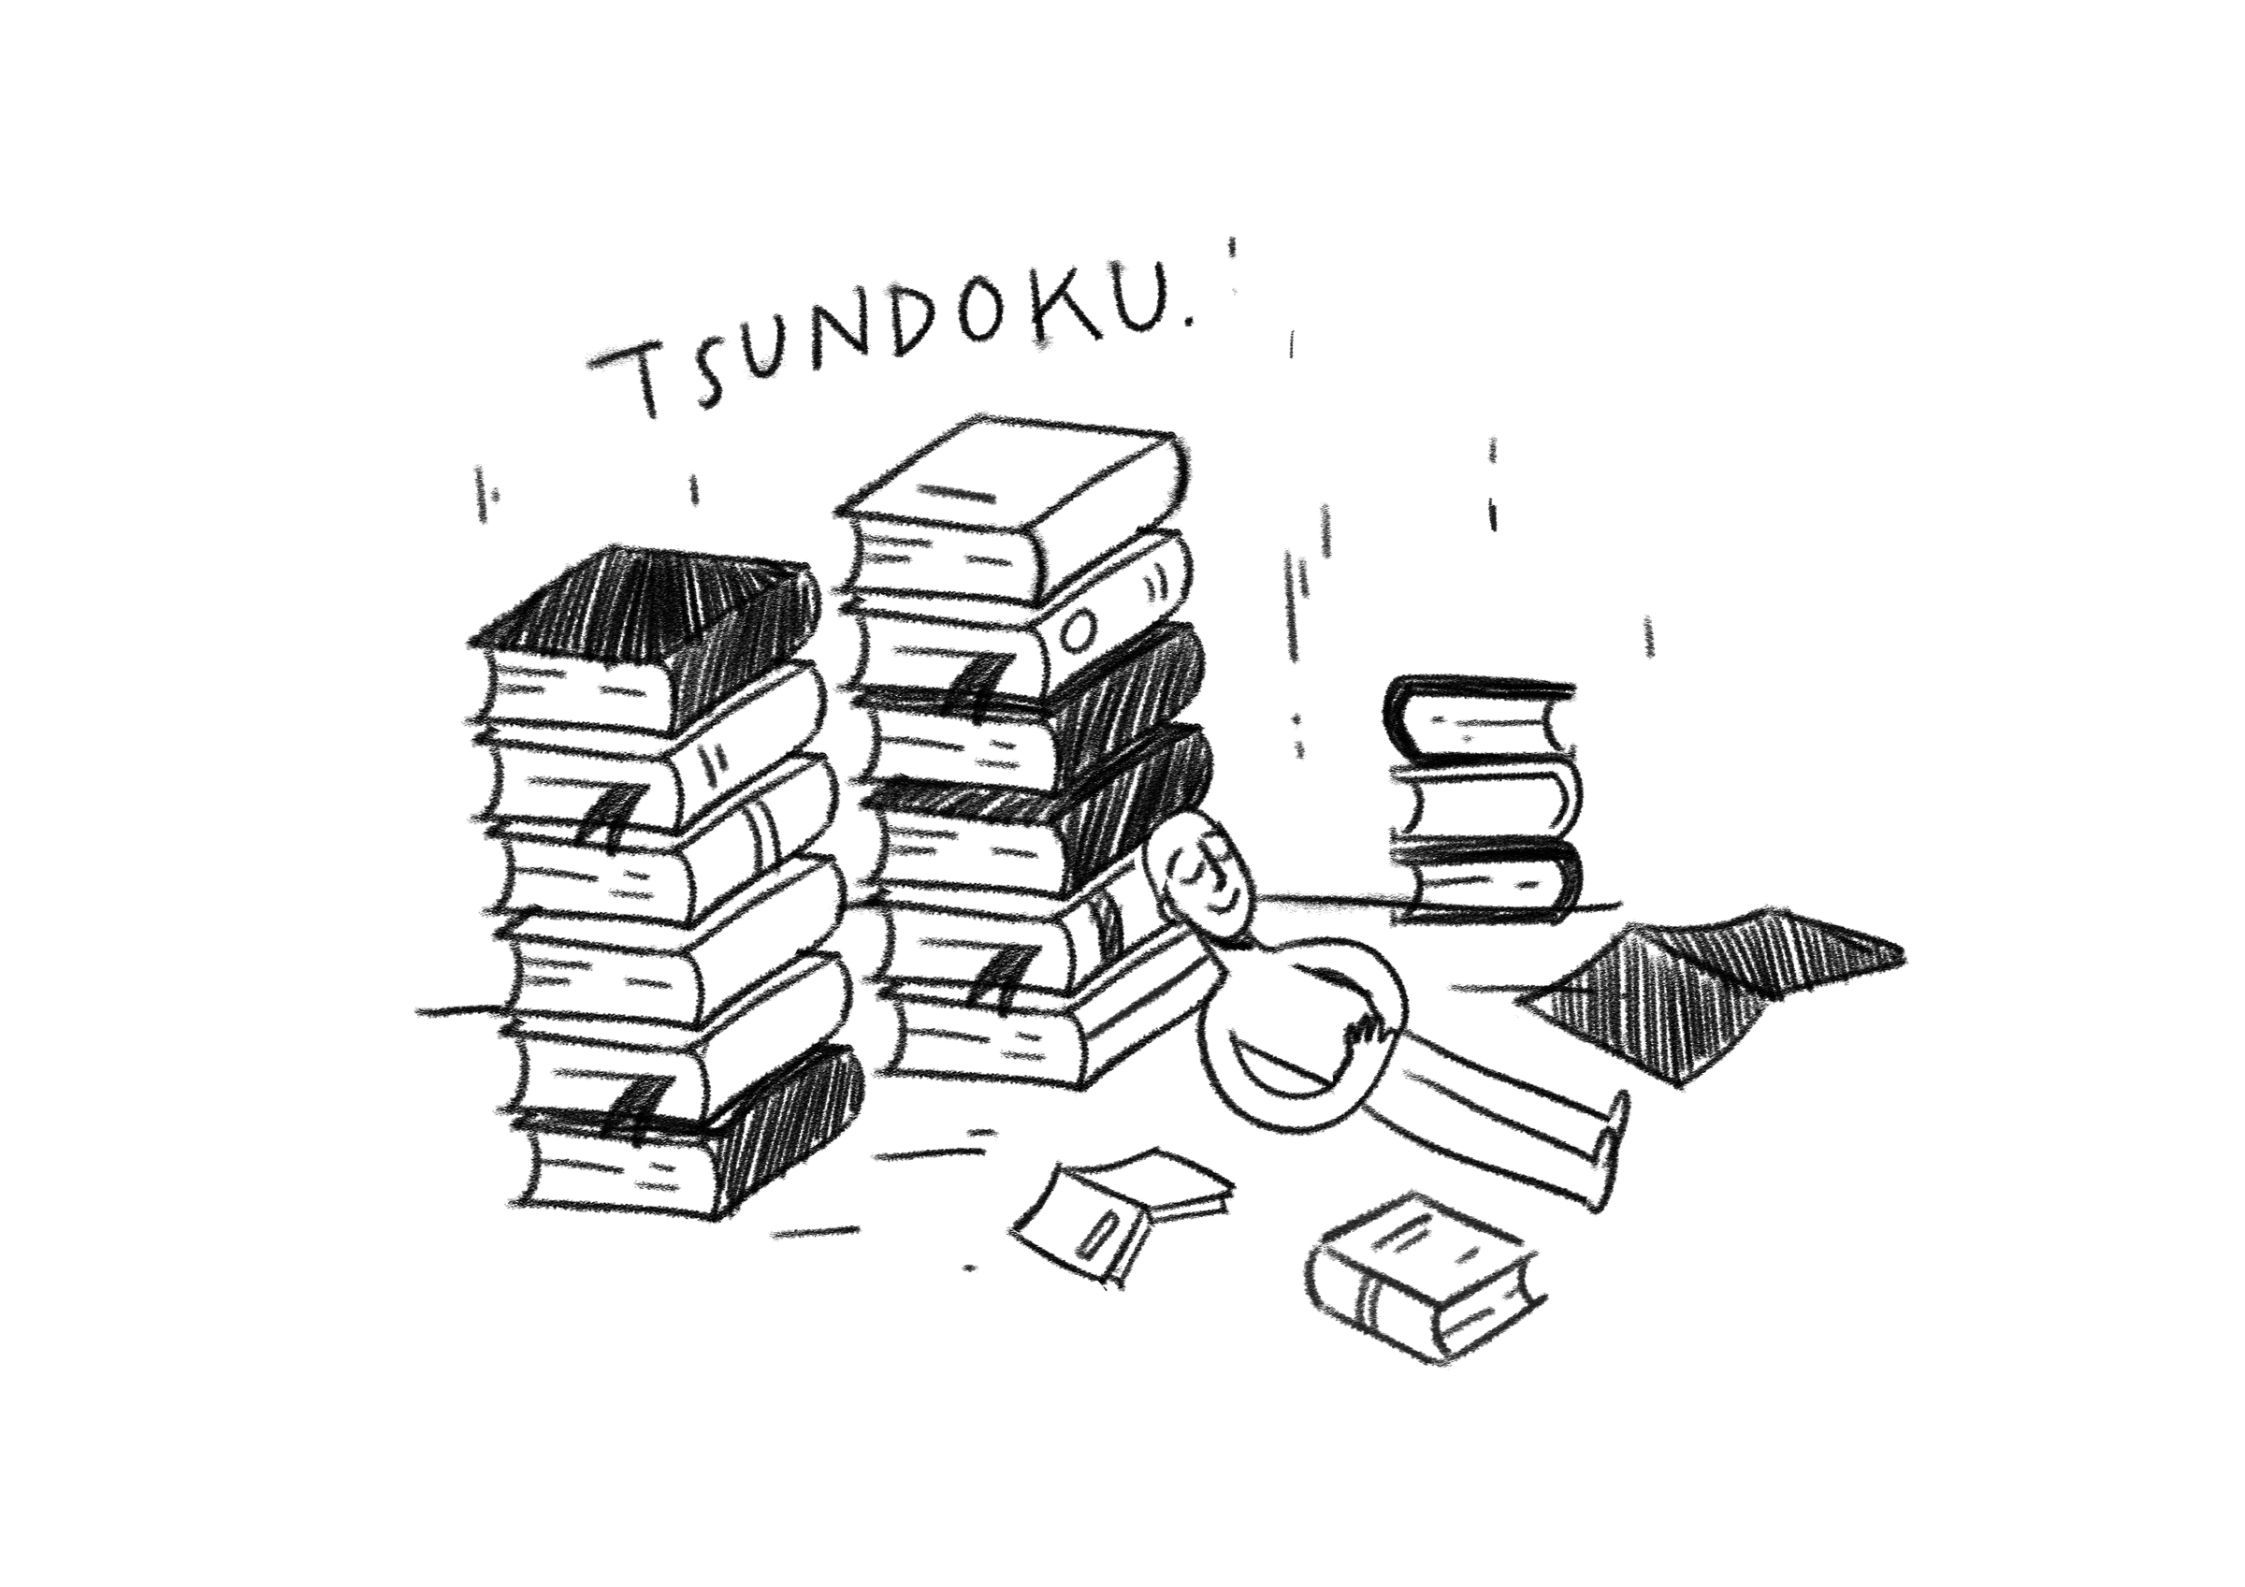 Tsundoku 1